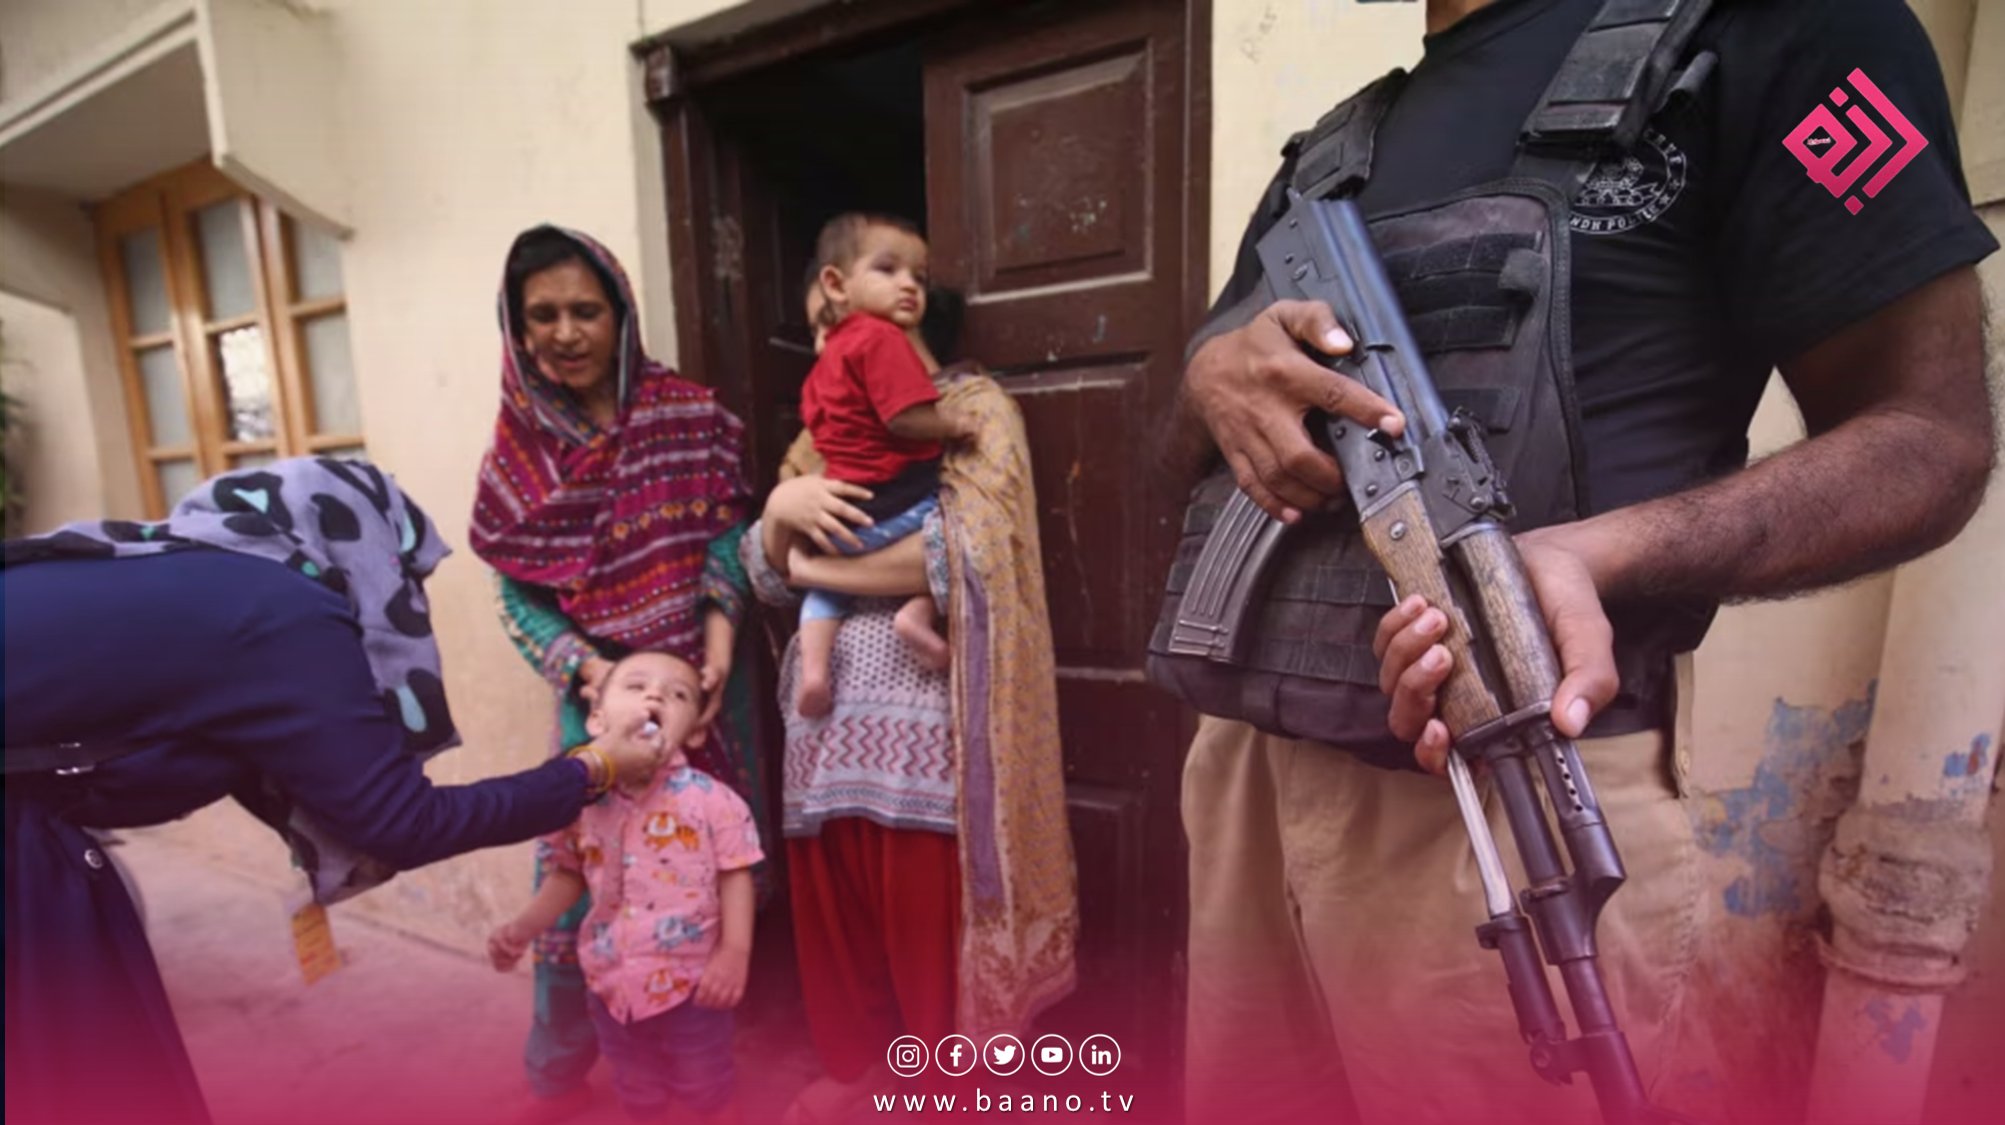 اولین مورد مثبت پولیو در بین کودکان سال روان در ولایت بلوچستان پاکستان گزارش شده است.